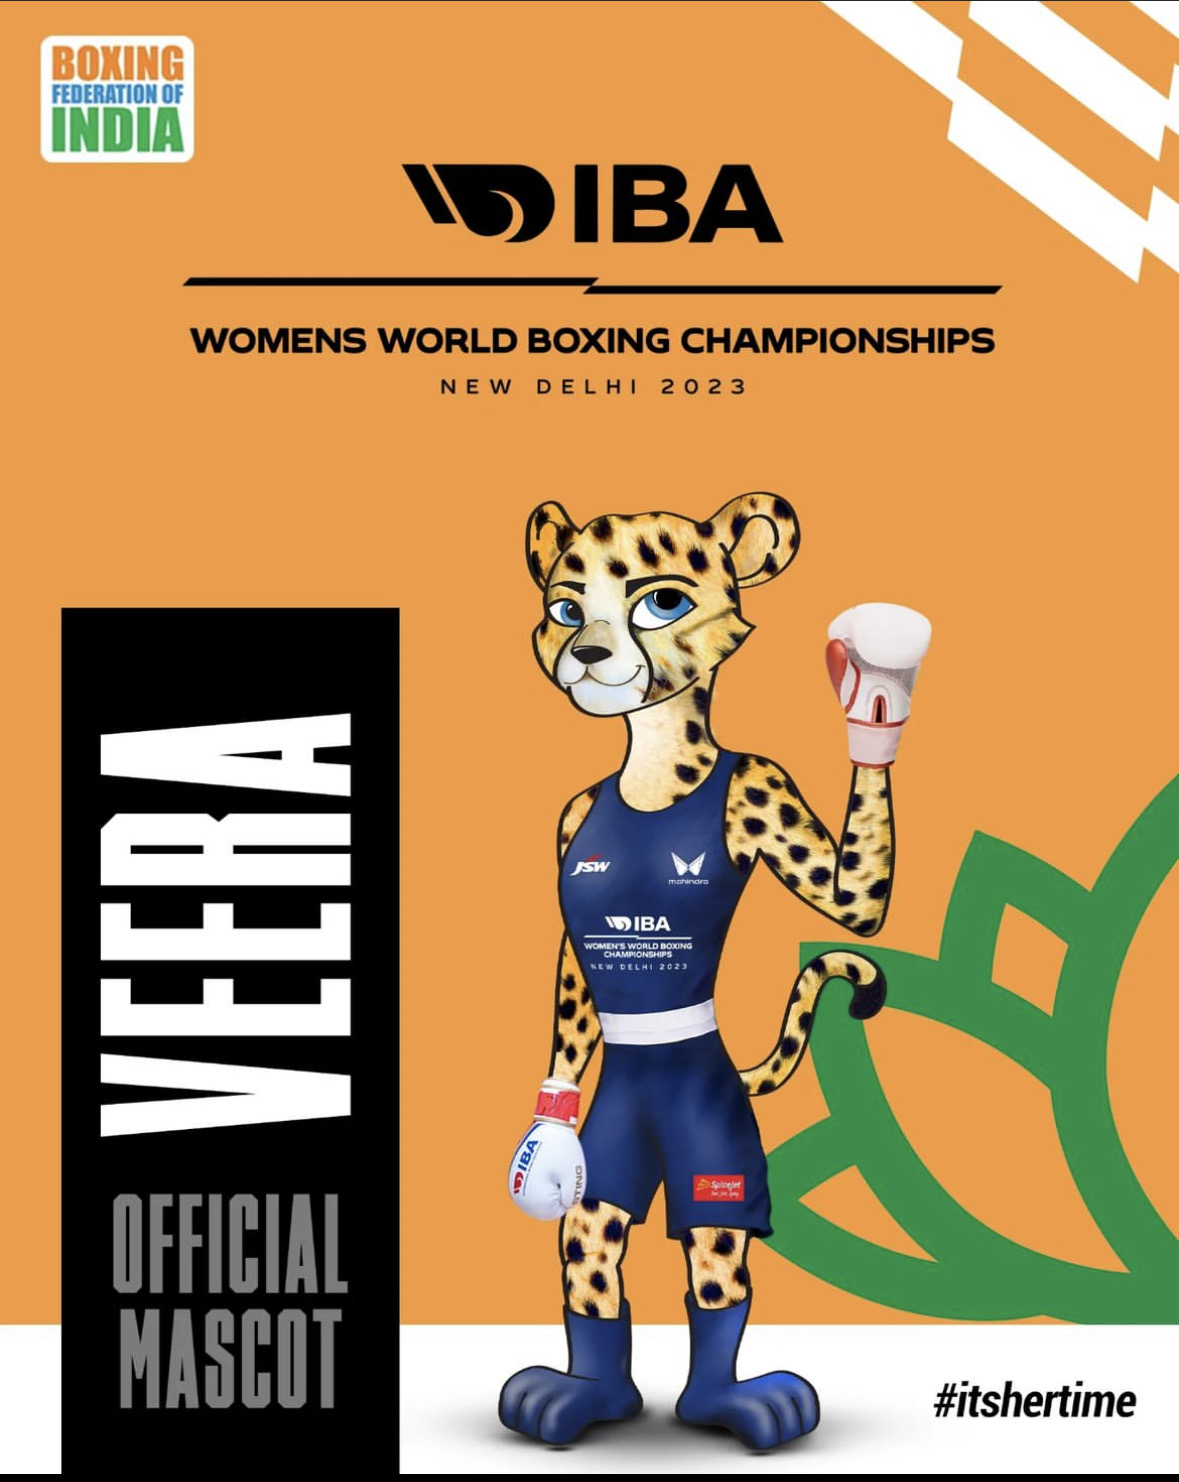 3 Giorni all'inizio del Mondiali Femminili New Delhi 2023 - Mascotte del Torneo il Ghepardo Veera